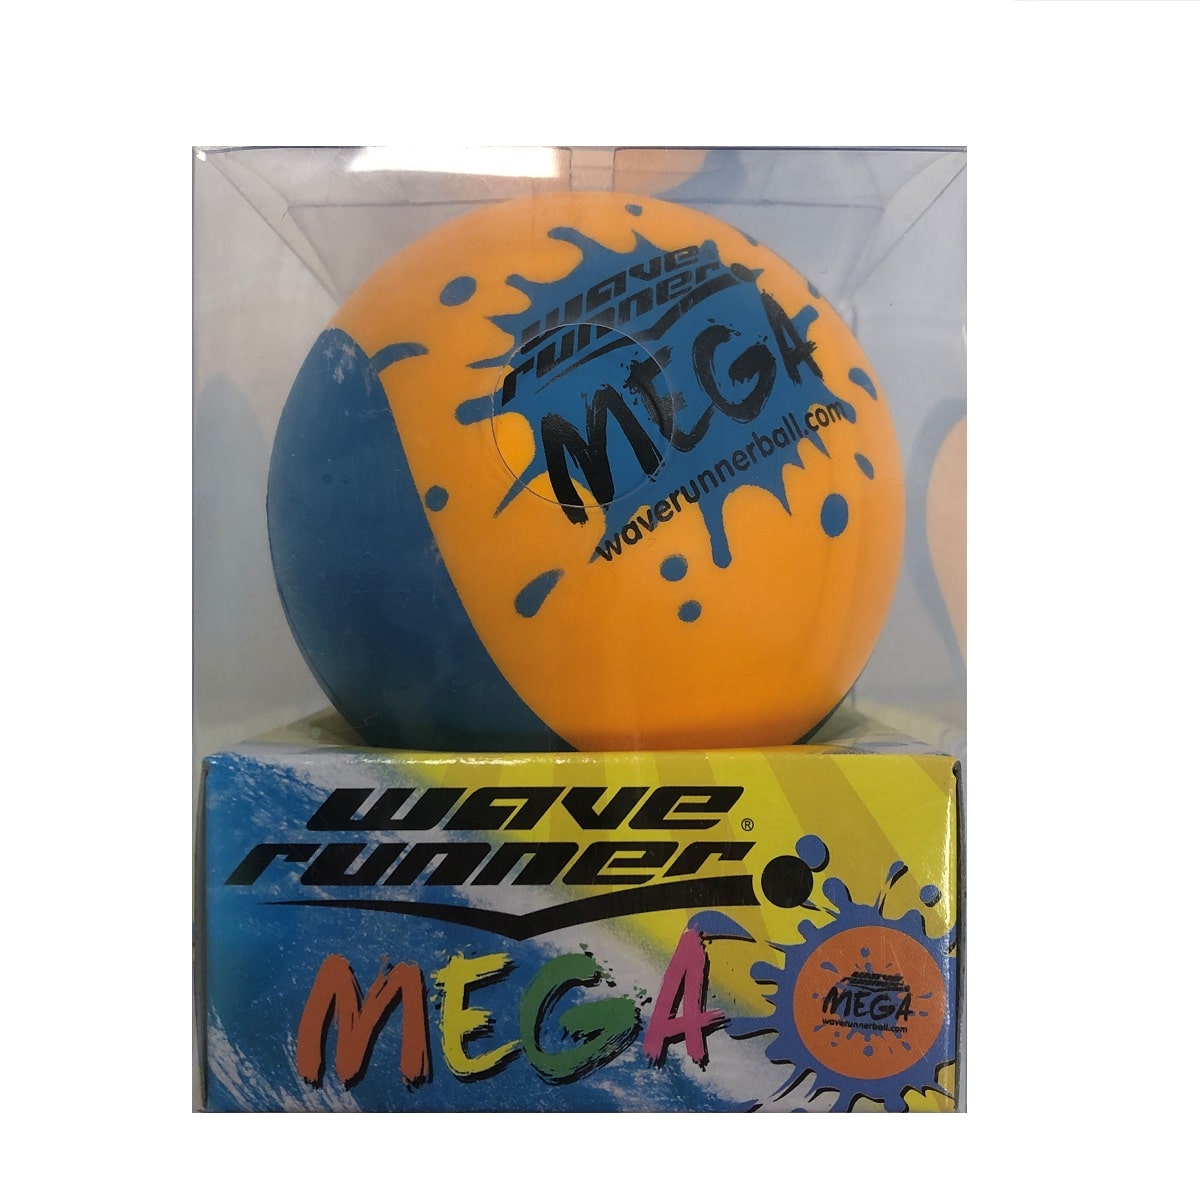 Balle Rebondissante d'eau, 3 Pièces Balle Qui Rebondit Water Bouncing Ball  à Eau en Lycra à séchage Rapide pour Adolescents et Adultes la Plage,et Les  activités de Plein air